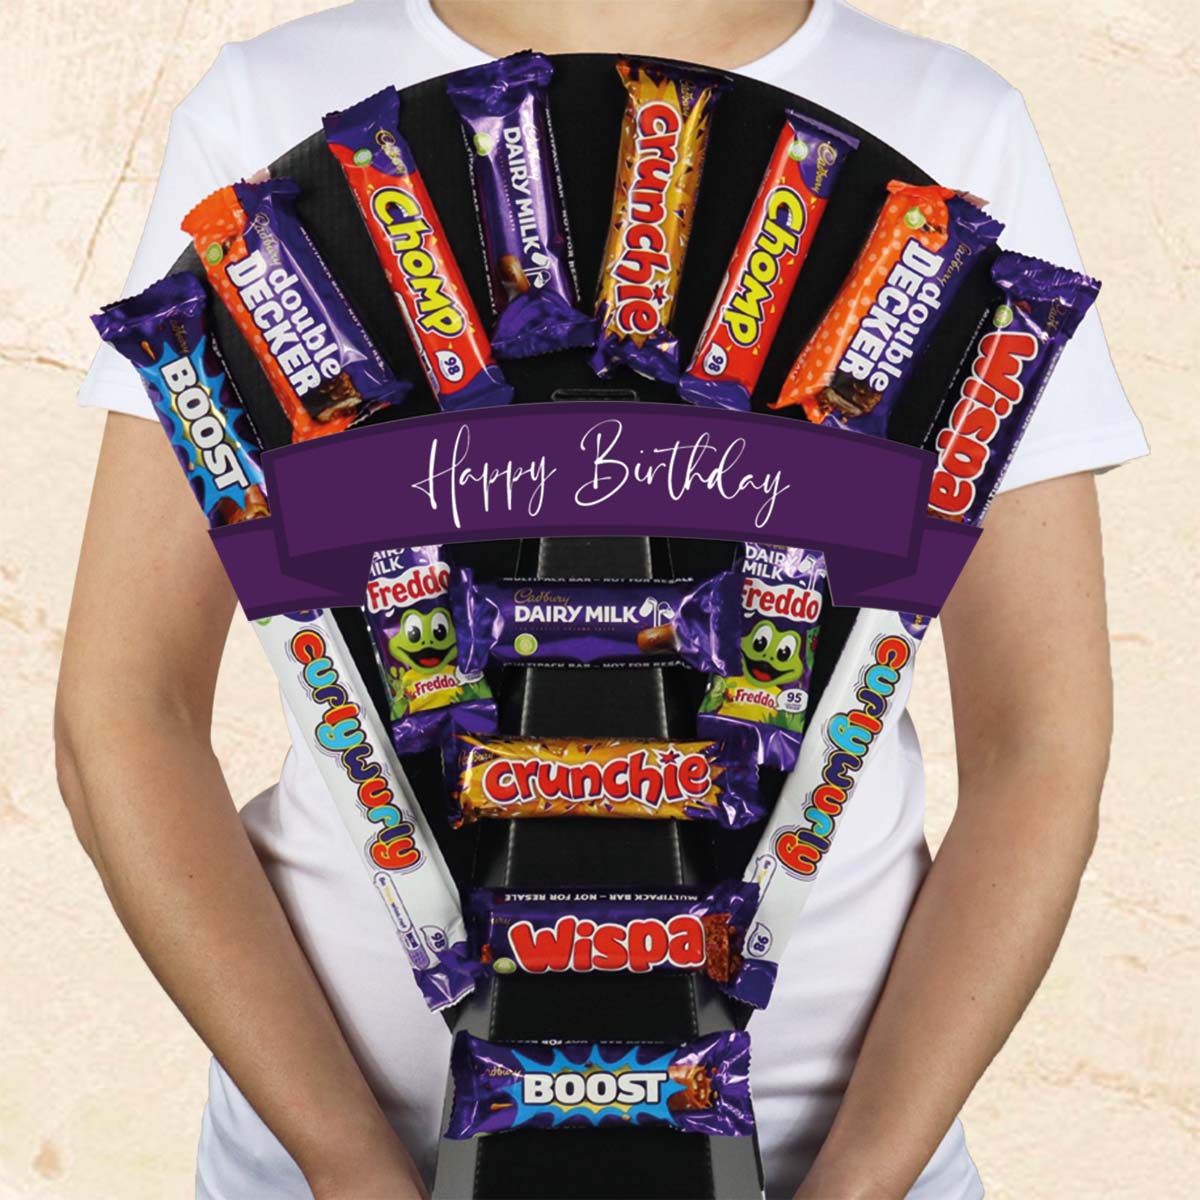 Large Cadbury Essentials Happy Birthday Chocolate Bouquet With Dairy Milk, Boost, Wispa, Crunchie & More - Gift Hamper Box by HamperWell